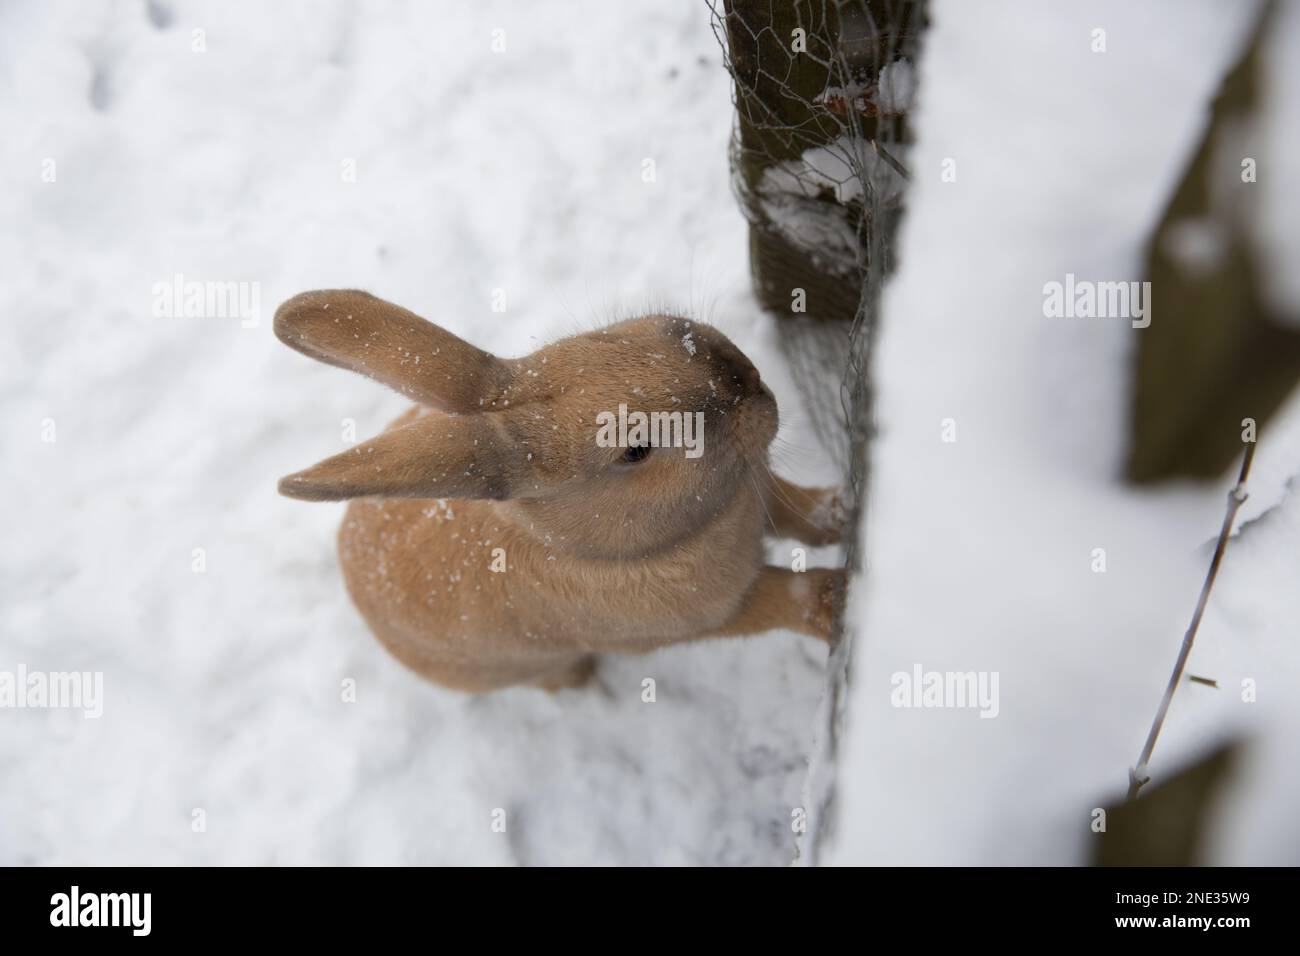 Ein Hase im Schnee, wird Ostern wieder kalt? - A rabbit in the snow, is Easter getting cold again? Stock Photo